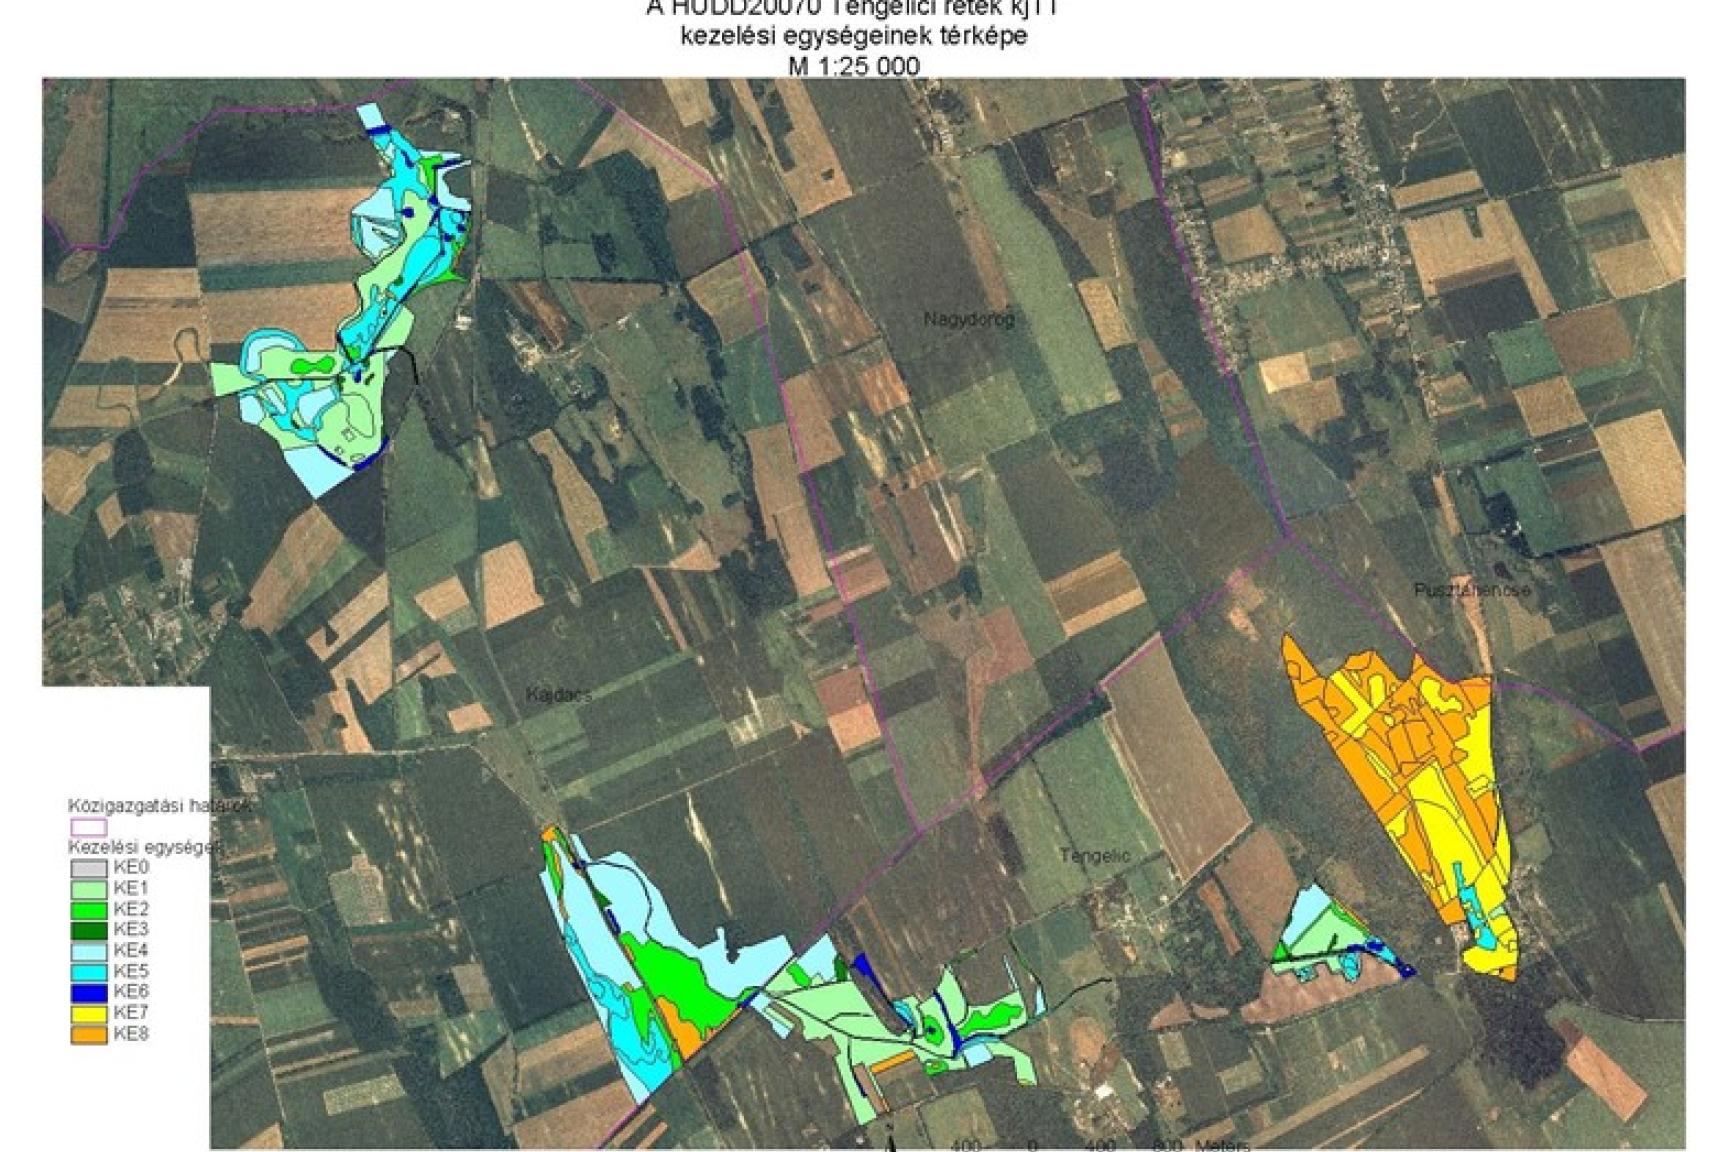 2. ábra: Tengelici rétek kiemelt jelentőségű természet-megőrzési terület (HUDD20070) kezelési egységeinek térképe